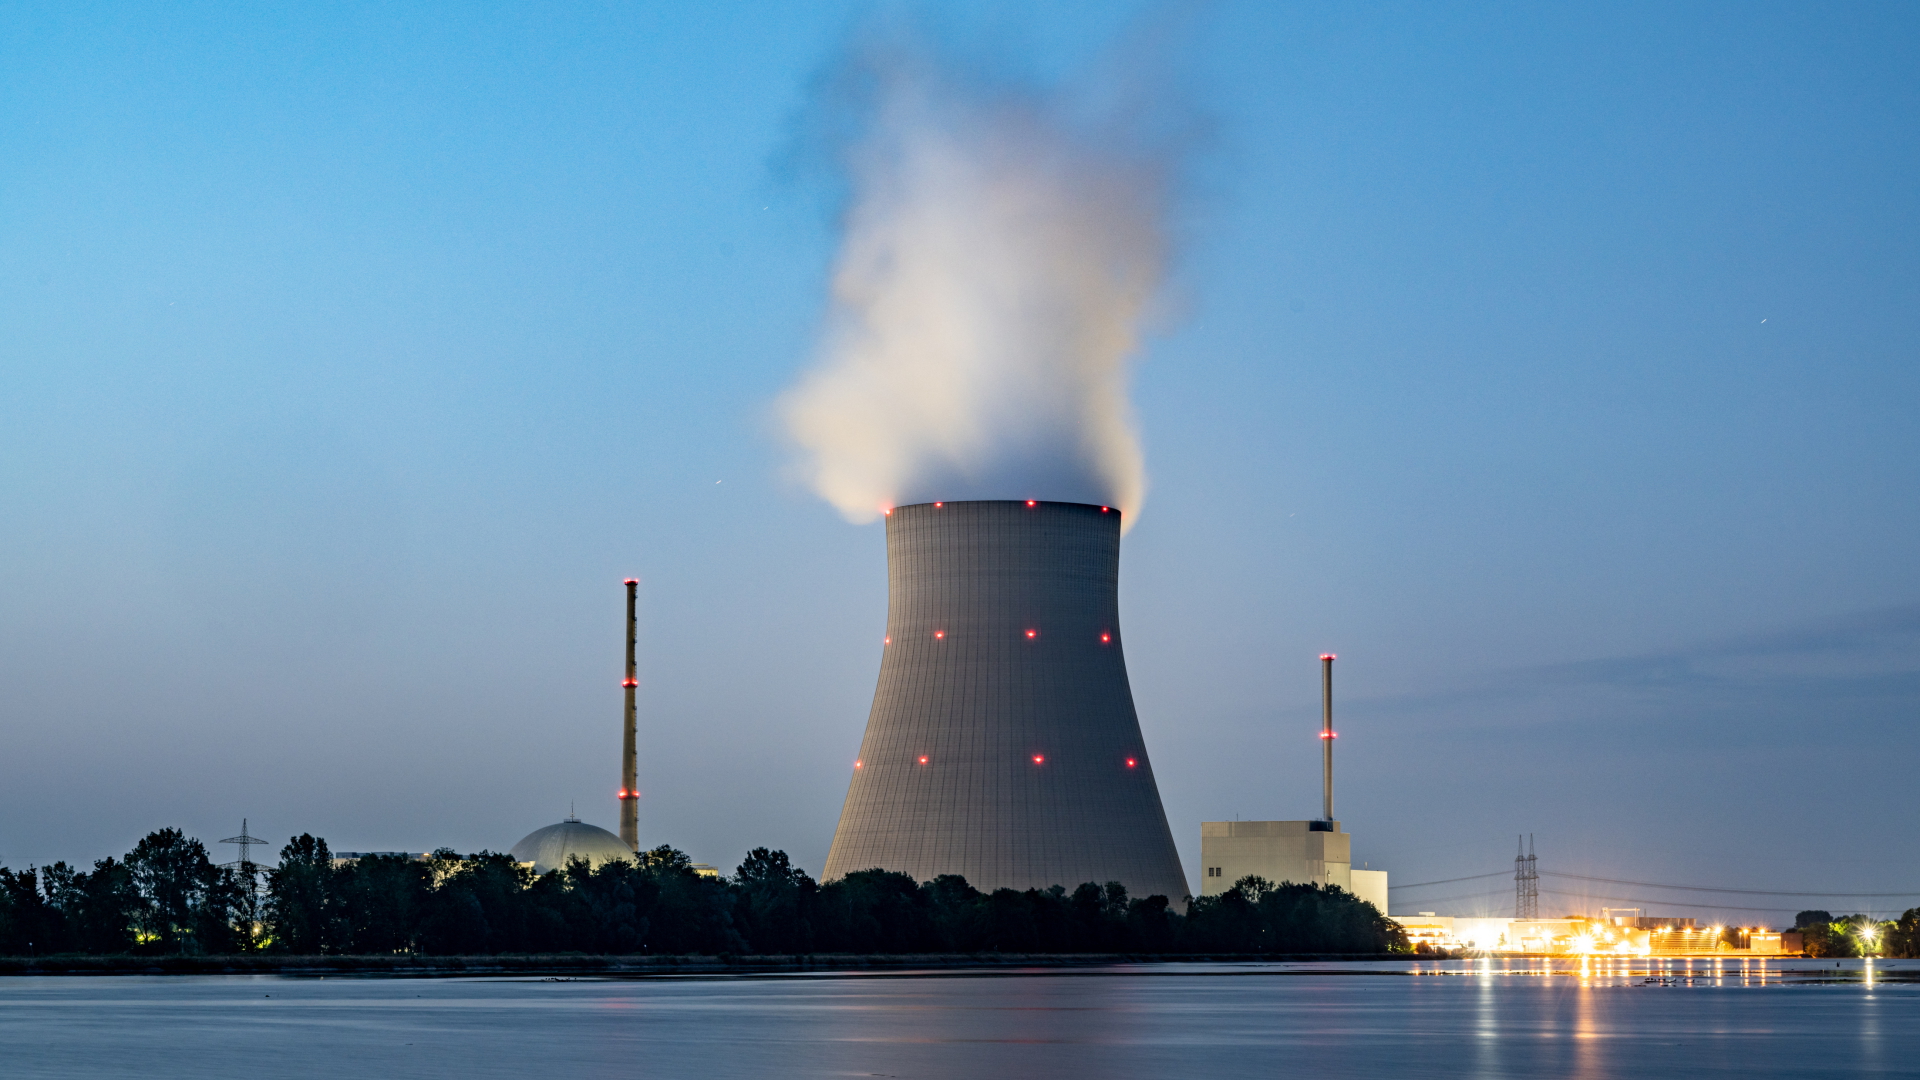 Wasserdampf steigt aus dem Kühltum vom Atomkraftwerk Isar 2. | dpa